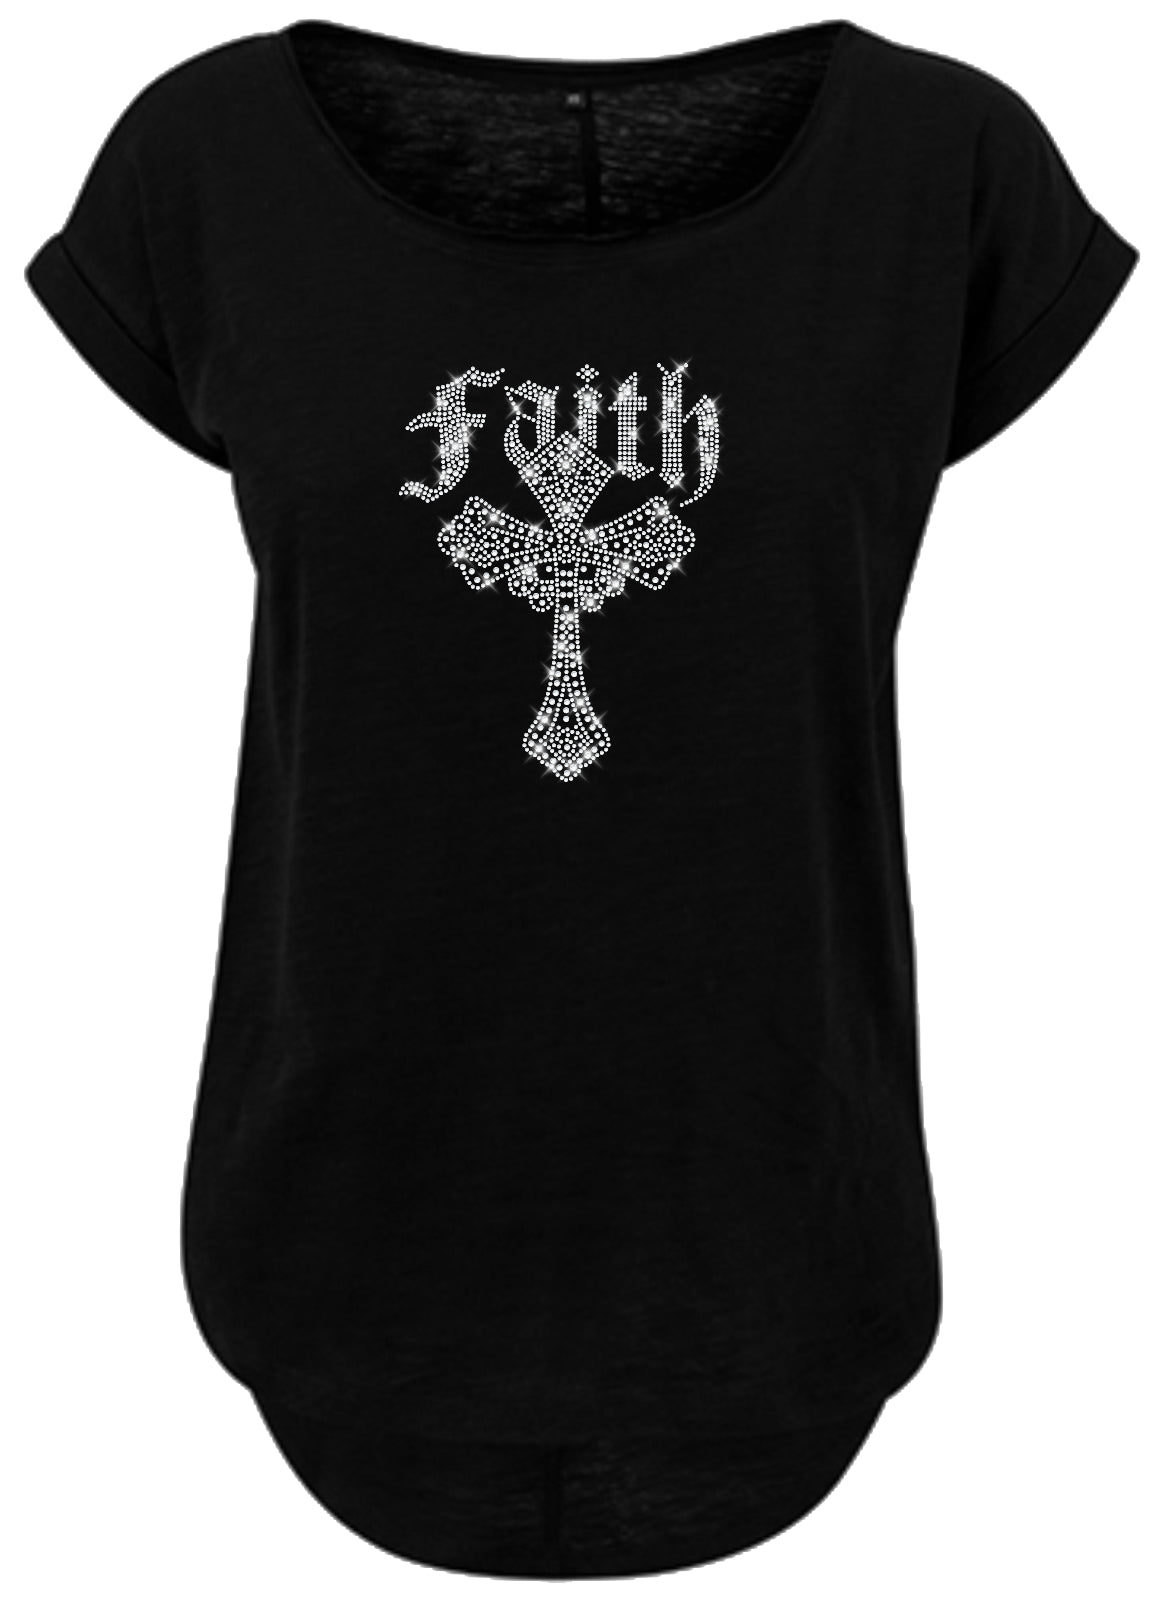 Blingeling®Shirts Damen T-Shirt   Gothic Kreuz Kristall mit Schriftzug Faith